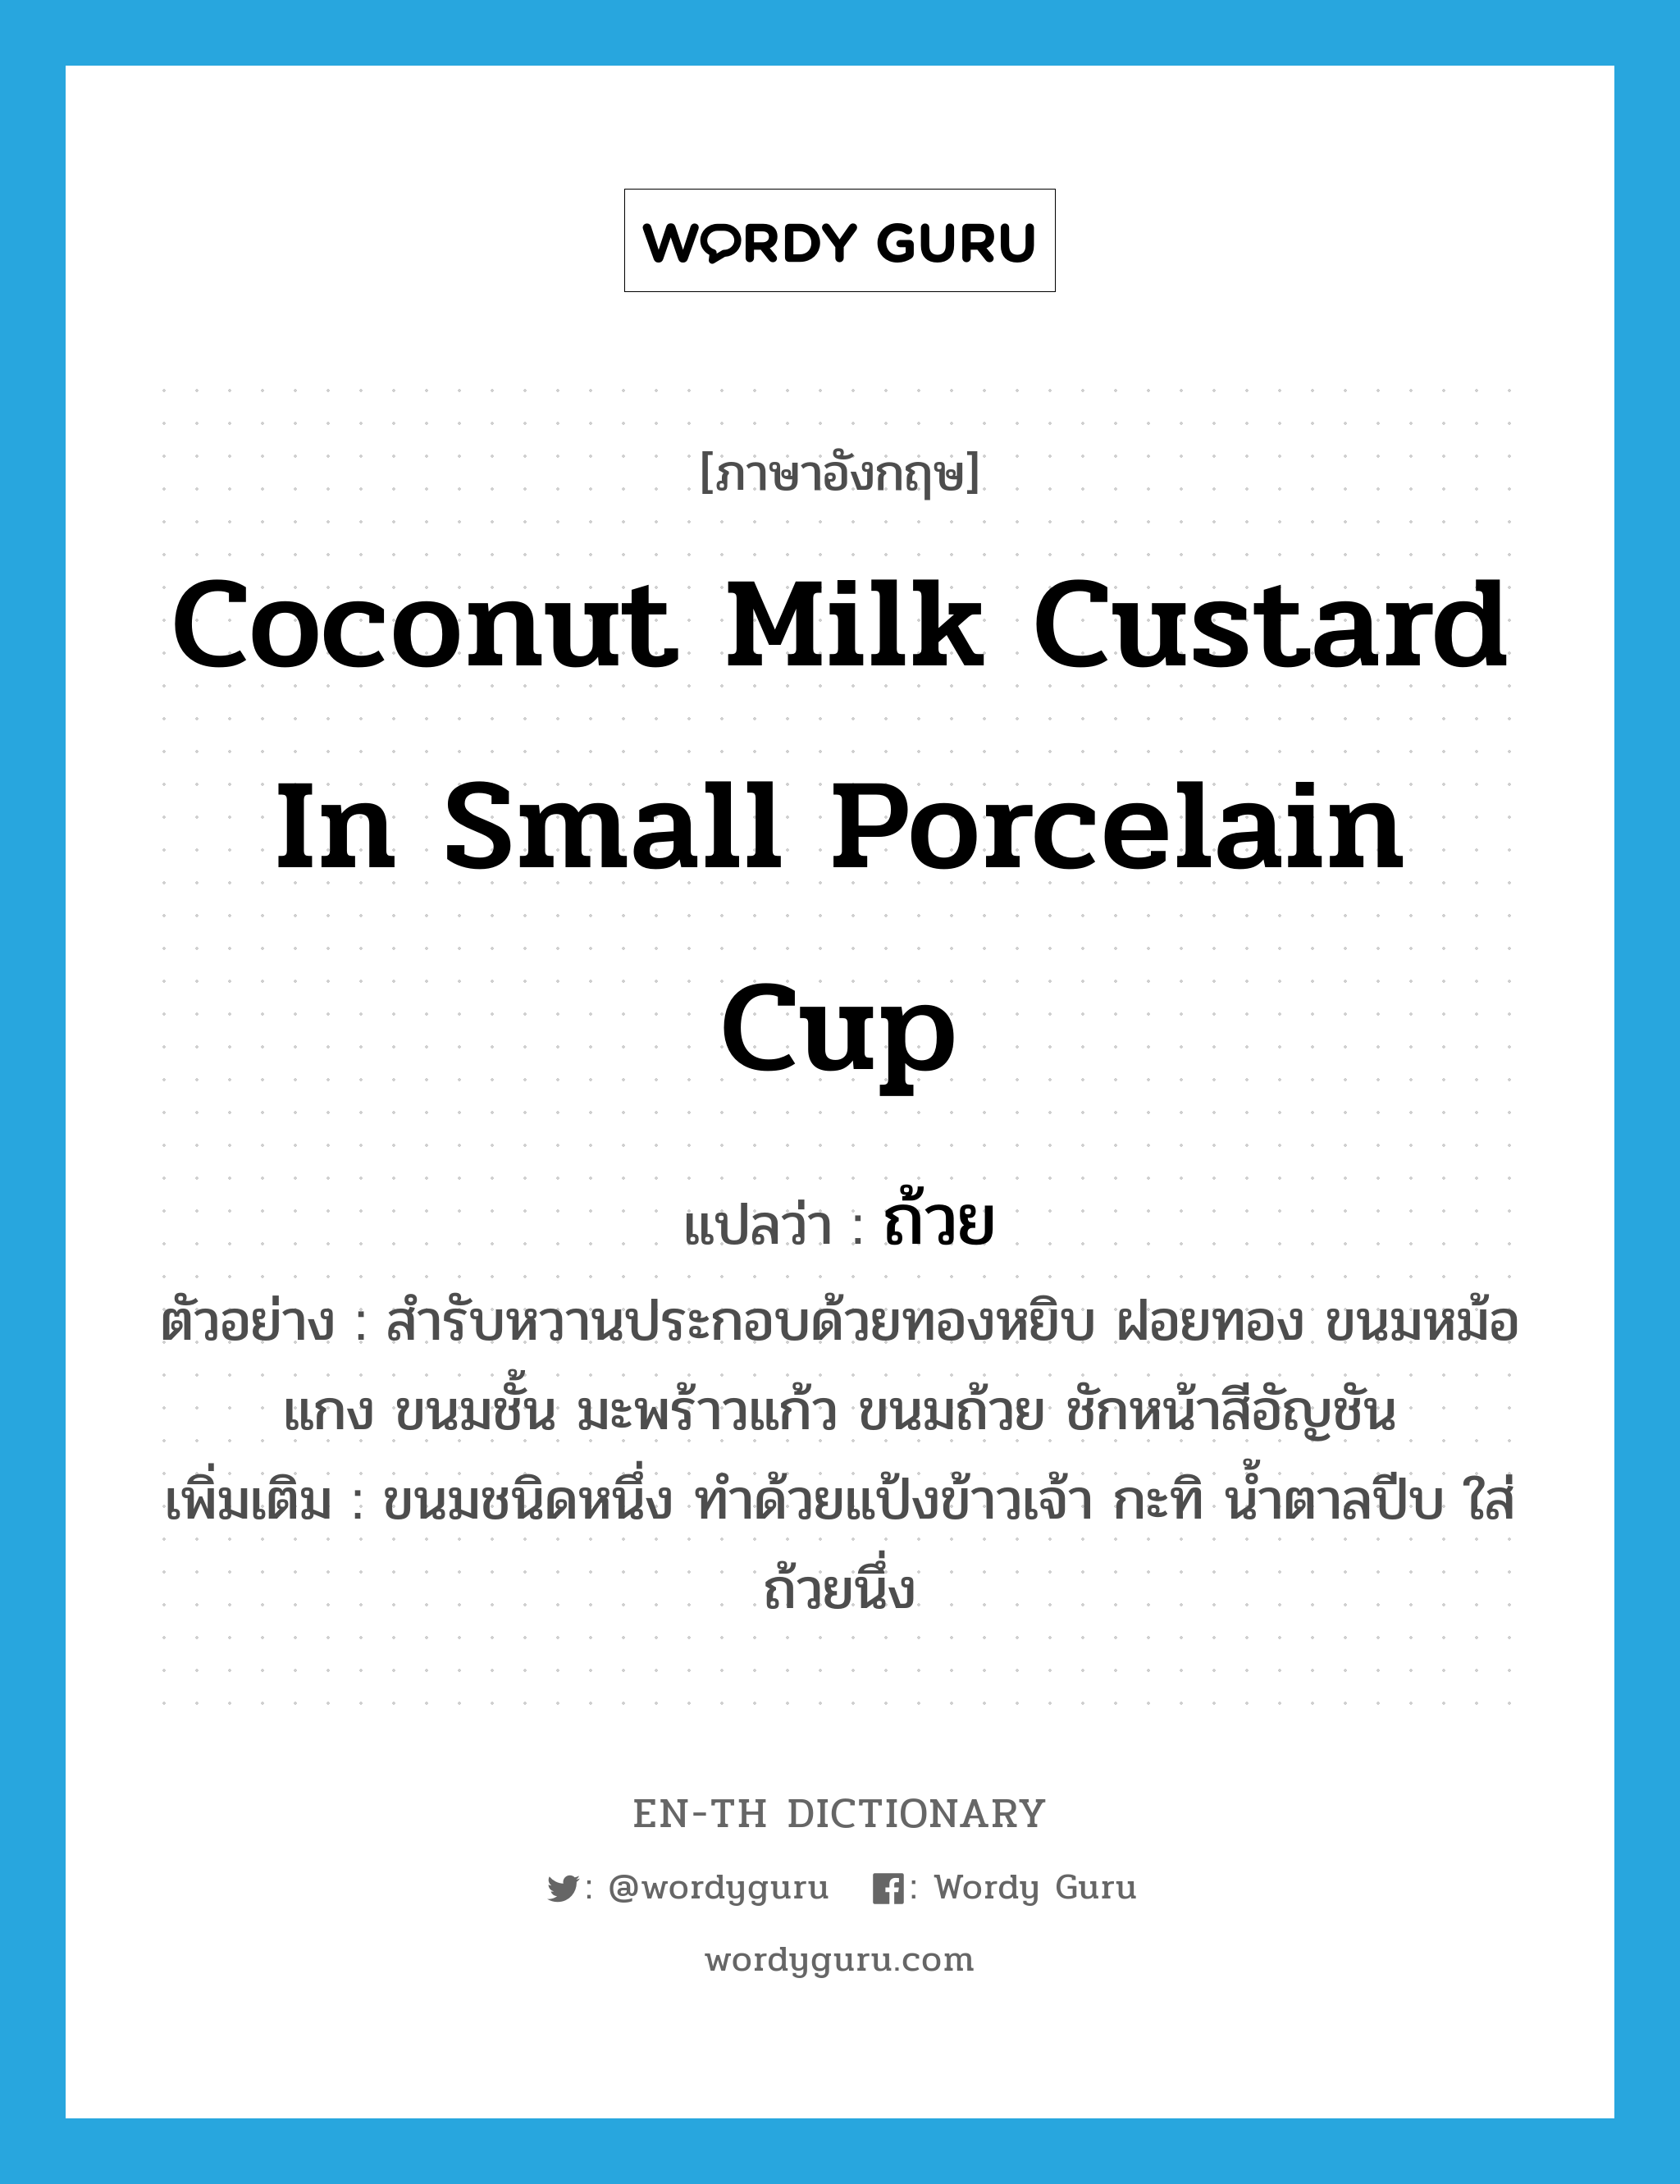 ถ้วย ภาษาอังกฤษ?, คำศัพท์ภาษาอังกฤษ ถ้วย แปลว่า coconut milk custard in small porcelain cup ประเภท N ตัวอย่าง สำรับหวานประกอบด้วยทองหยิบ ฝอยทอง ขนมหม้อแกง ขนมชั้น มะพร้าวแก้ว ขนมถ้วย ชักหน้าสีอัญชัน เพิ่มเติม ขนมชนิดหนึ่ง ทำด้วยแป้งข้าวเจ้า กะทิ น้ำตาลปีบ ใส่ถ้วยนึ่ง หมวด N